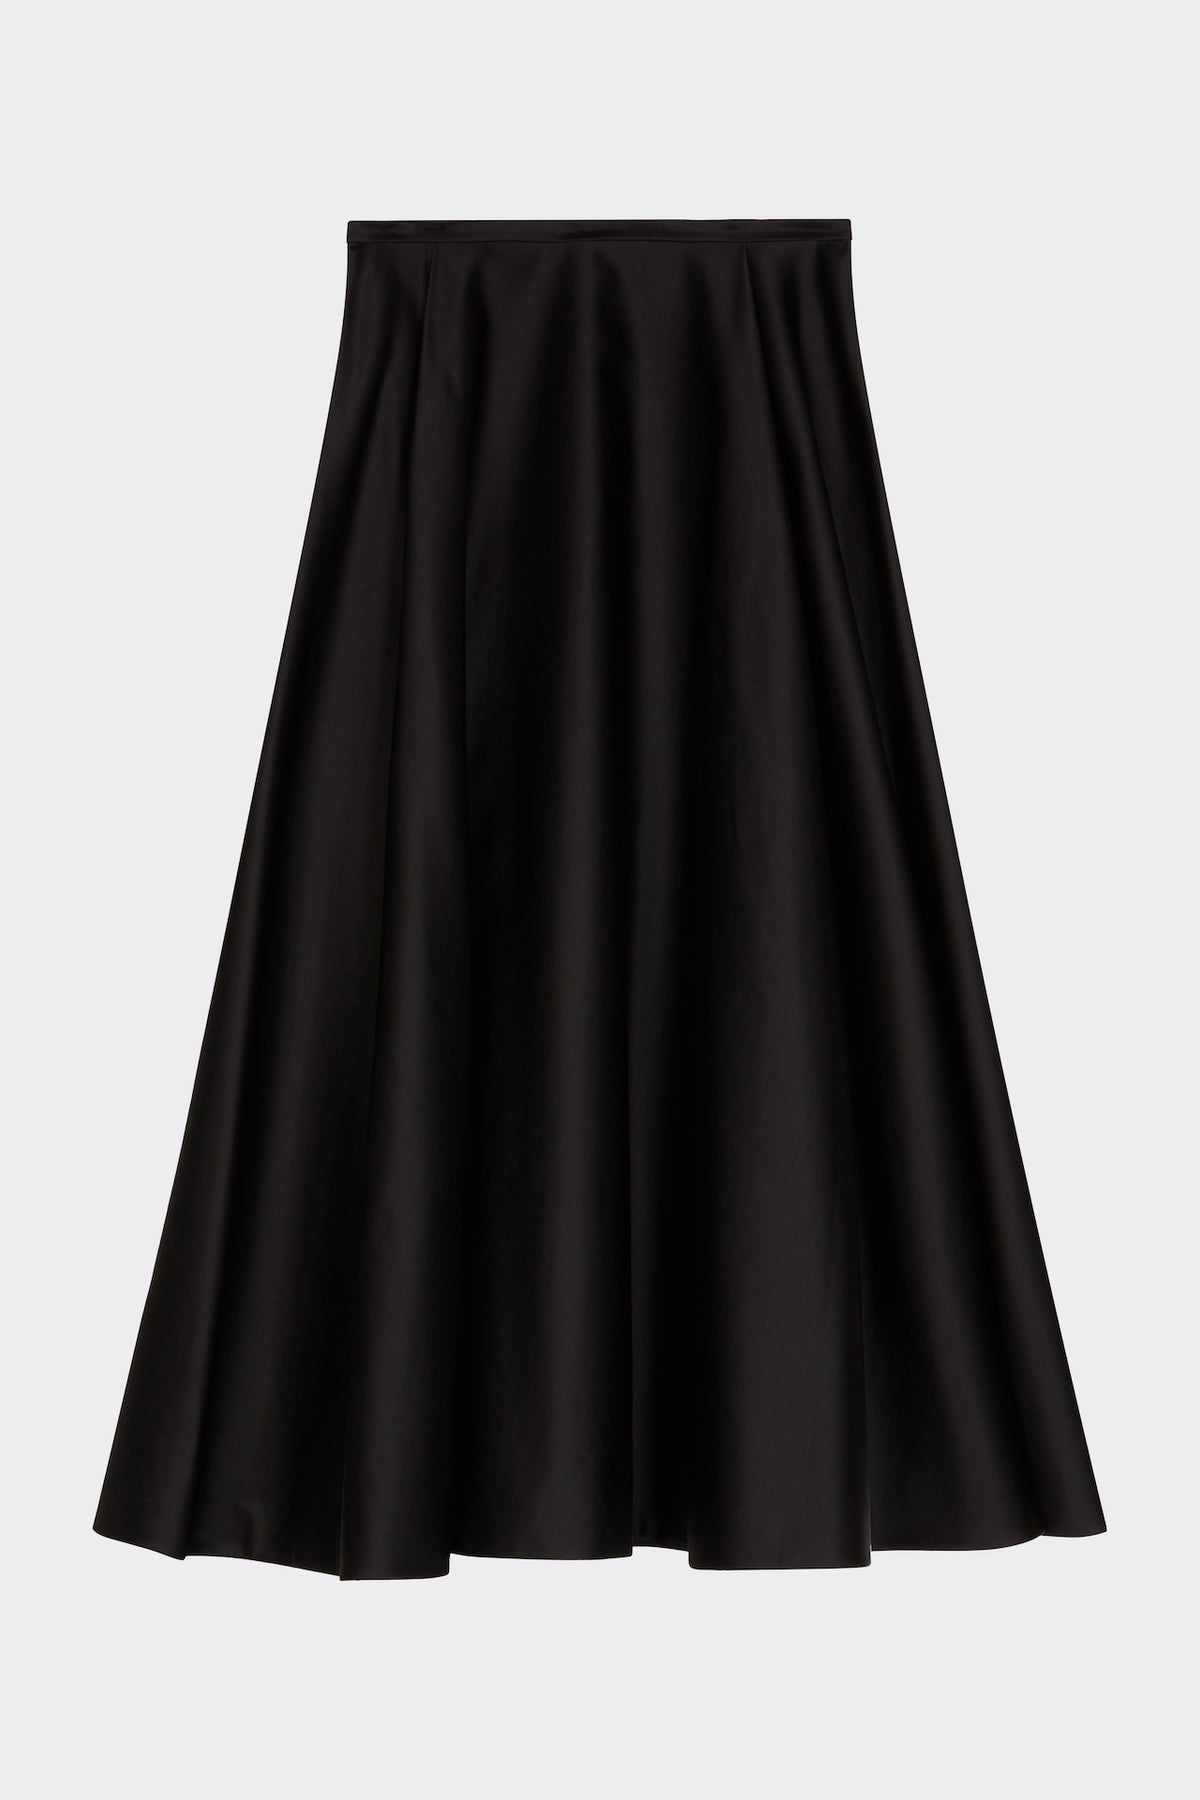 Hetty Skirt in Black| Noon by Noor